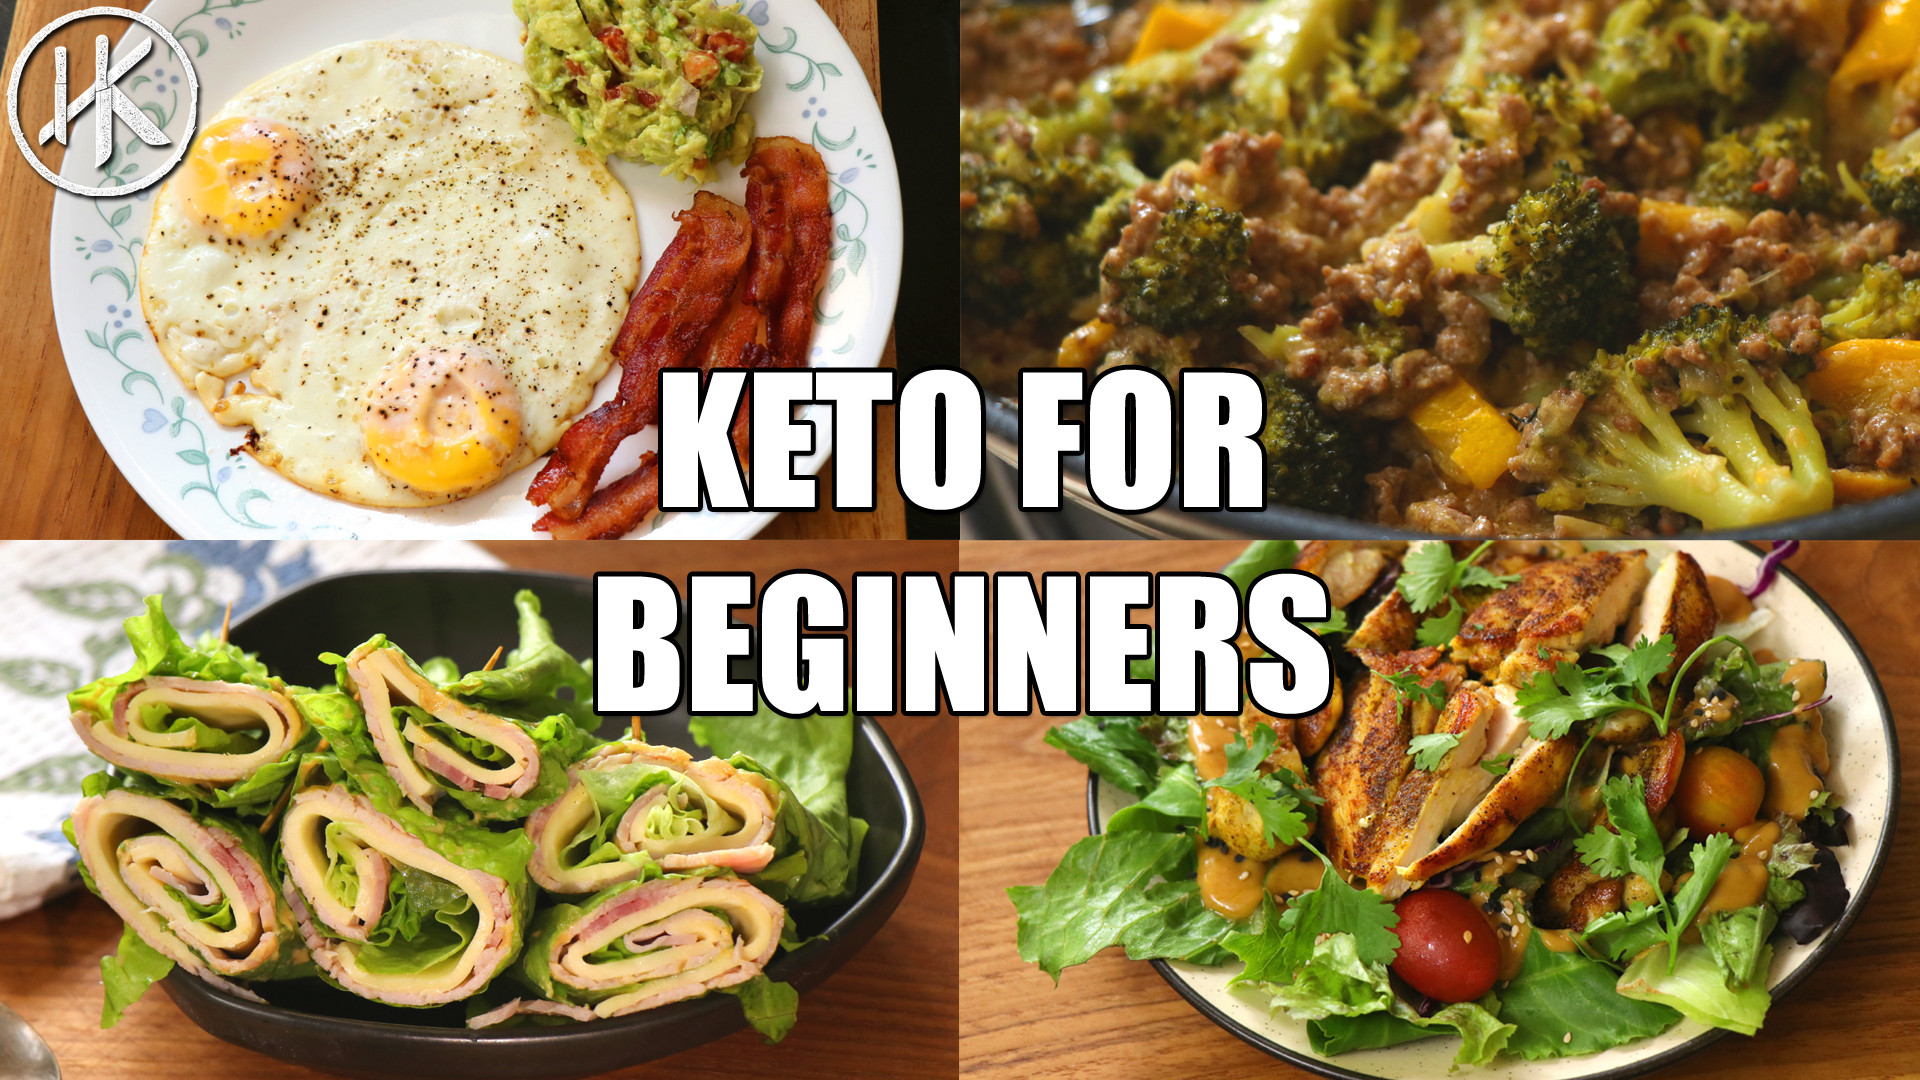 Keto Diet Meals For Beginners
 Keto for Beginners Free Keto Meal Plan Headbanger s